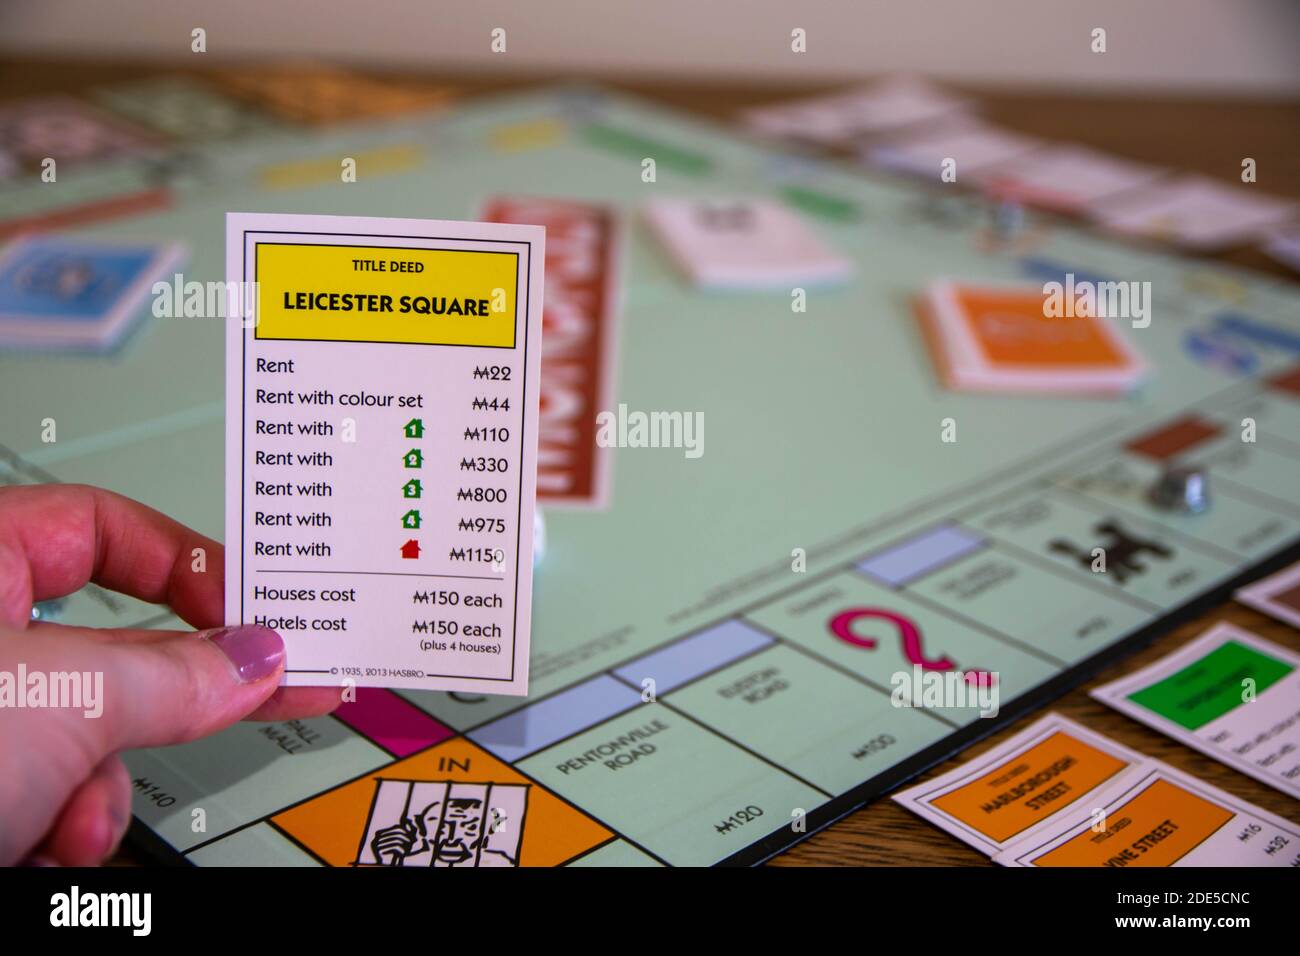 Durham, Großbritannien - 5. April 2020: Monopoly ist das klassische, schnell handelnde Brettspiel für Immobilien (Hasbro-Spiele). Finanz-, Banken-, Kauf von Immobilien, erste Stockfoto